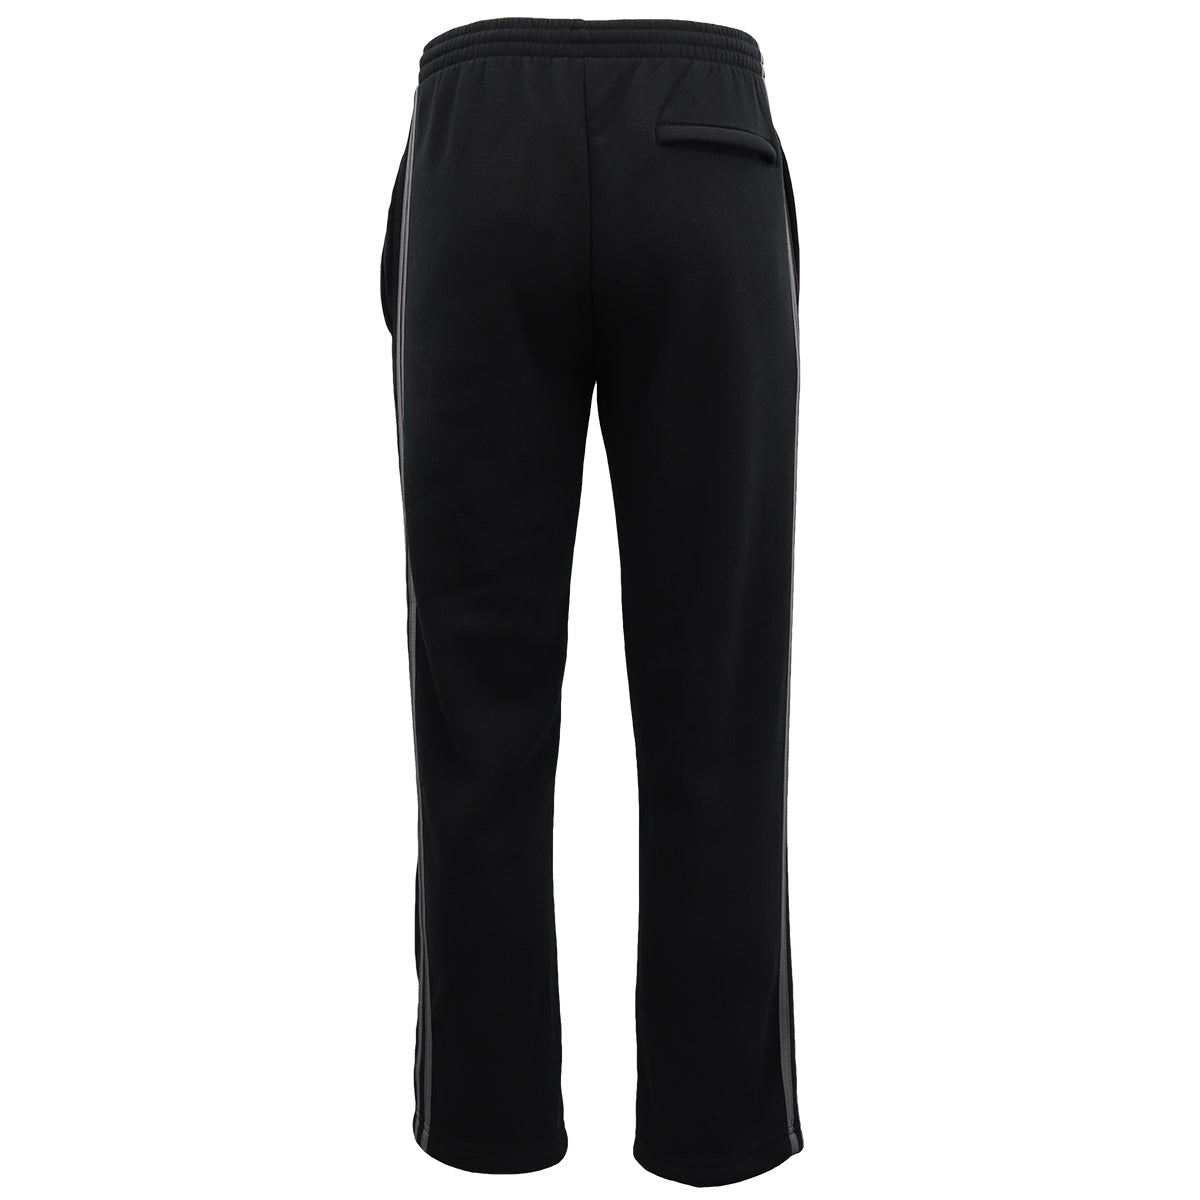 Men's Fleece Casual Sports Track Pants w Zip Pocket Striped Sweat Trousers S-6XL, Light Grey, L